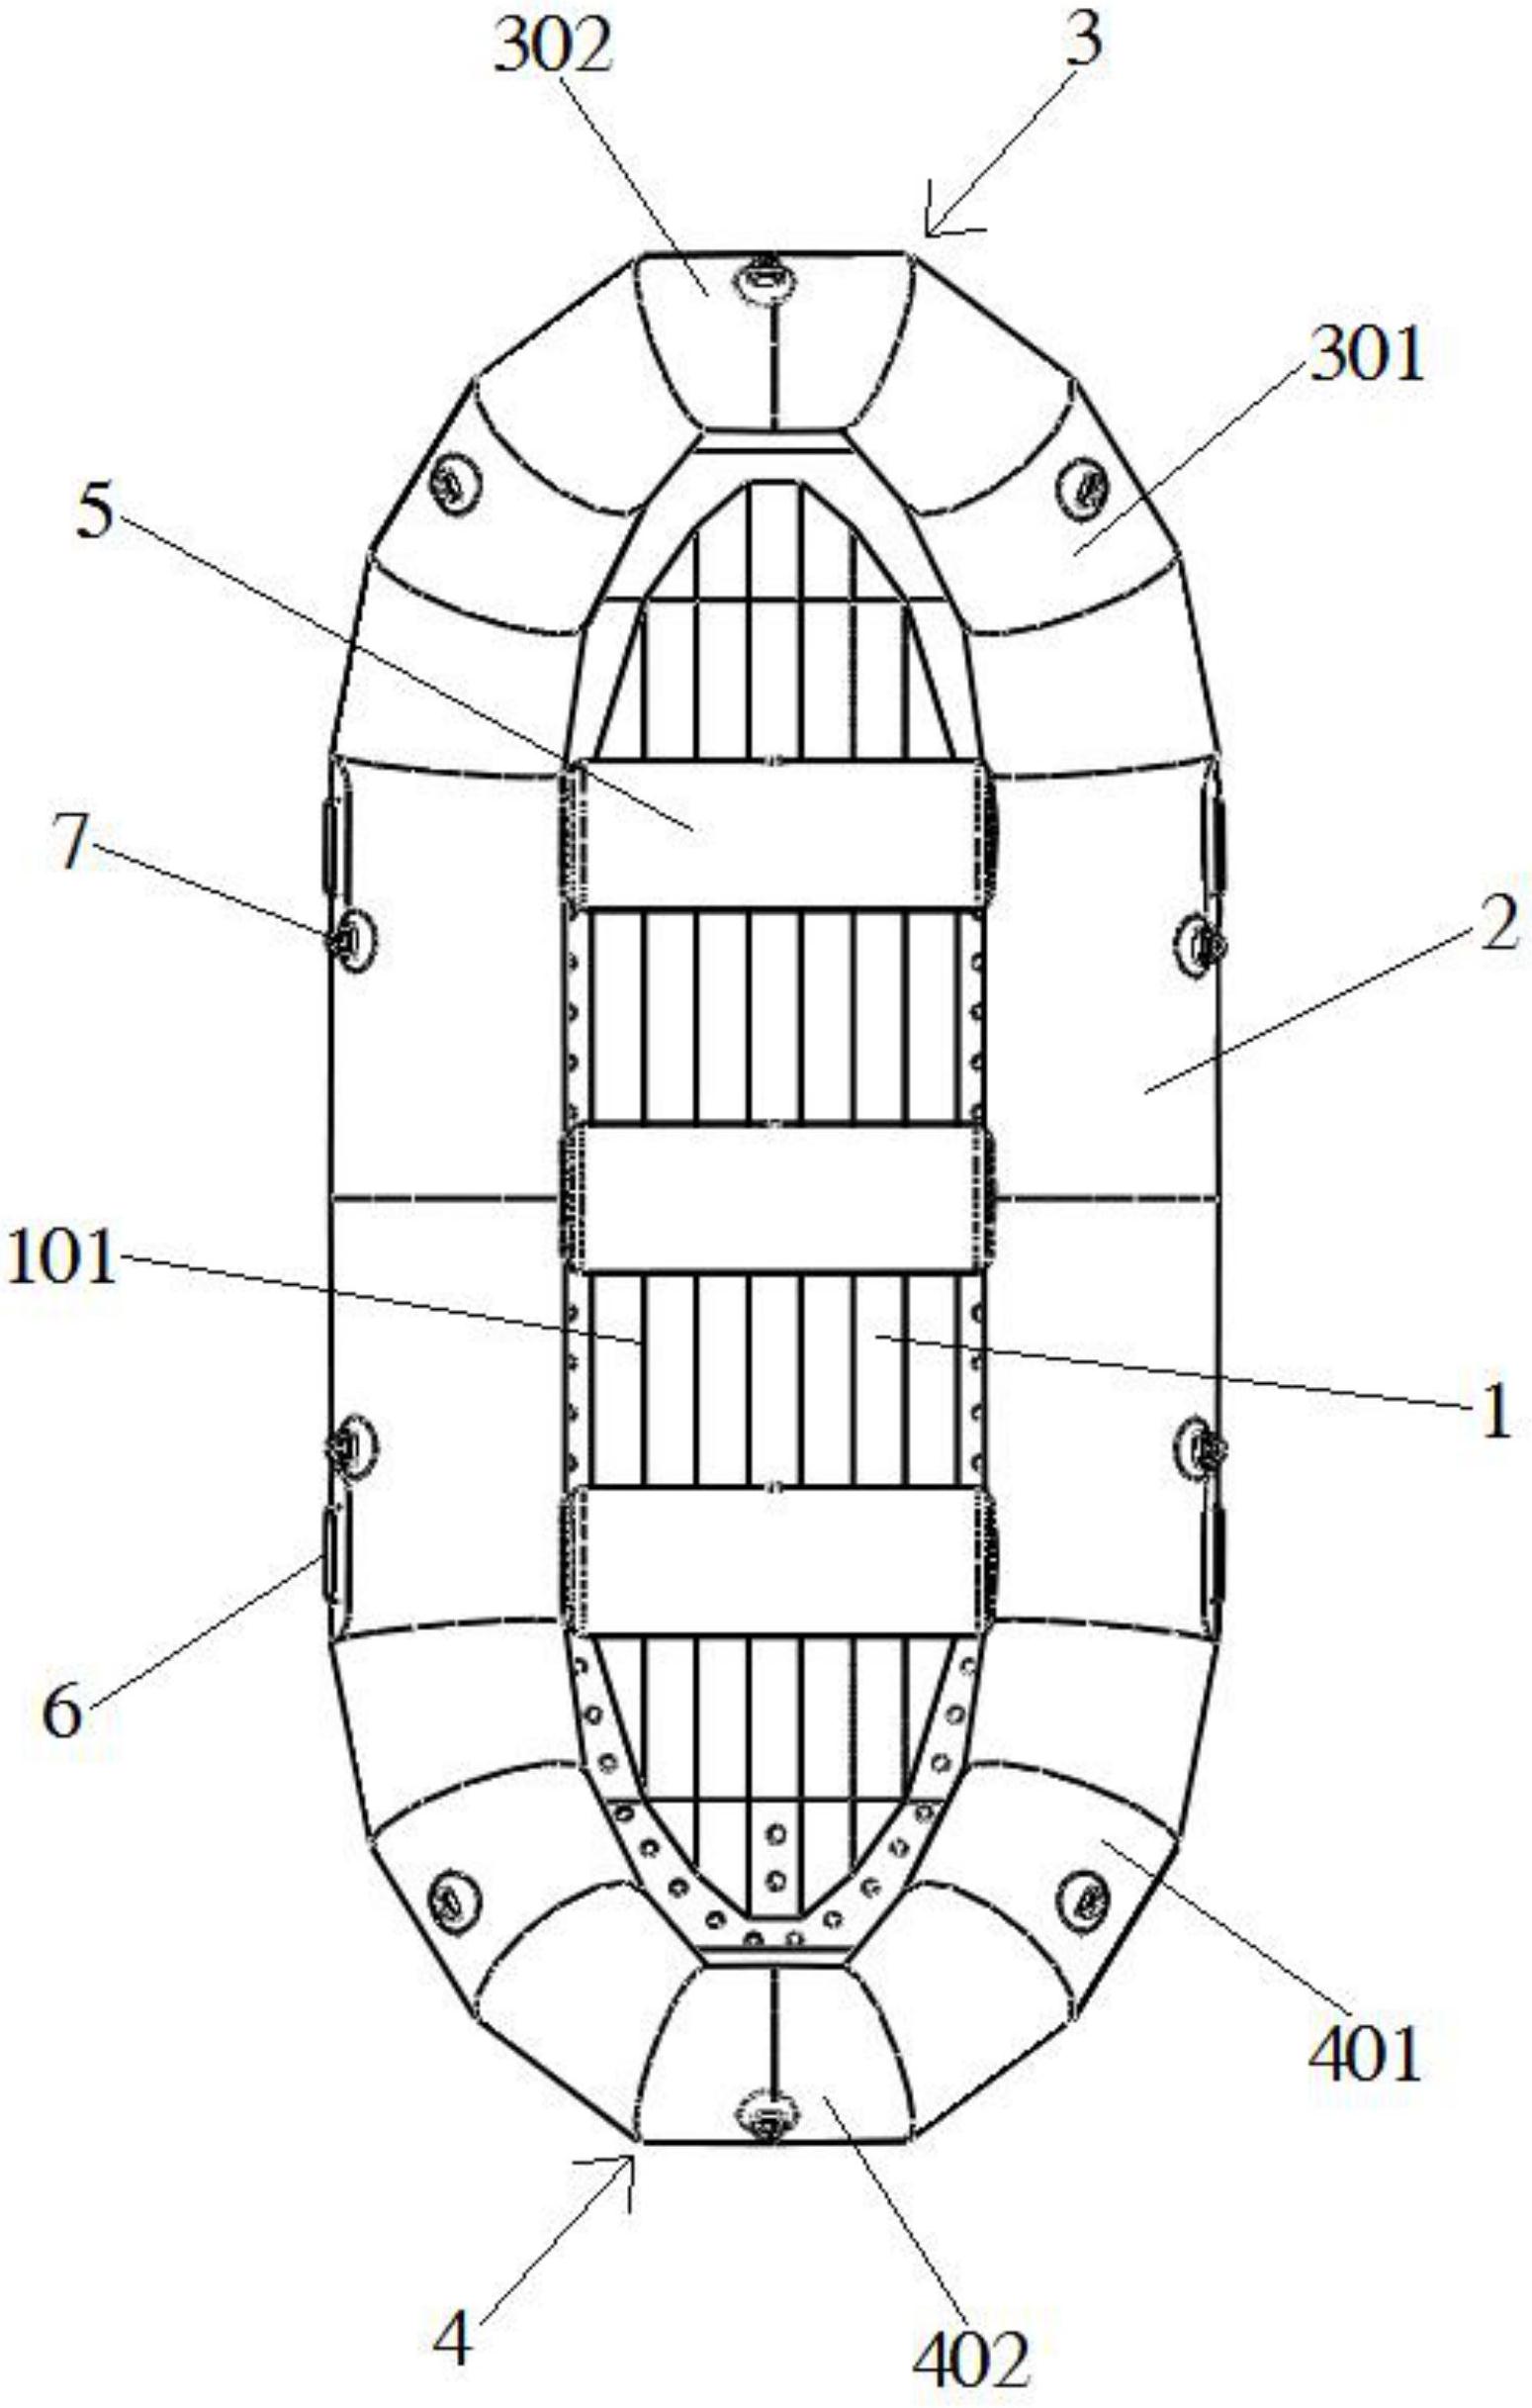 高速快艇船底结构图图片